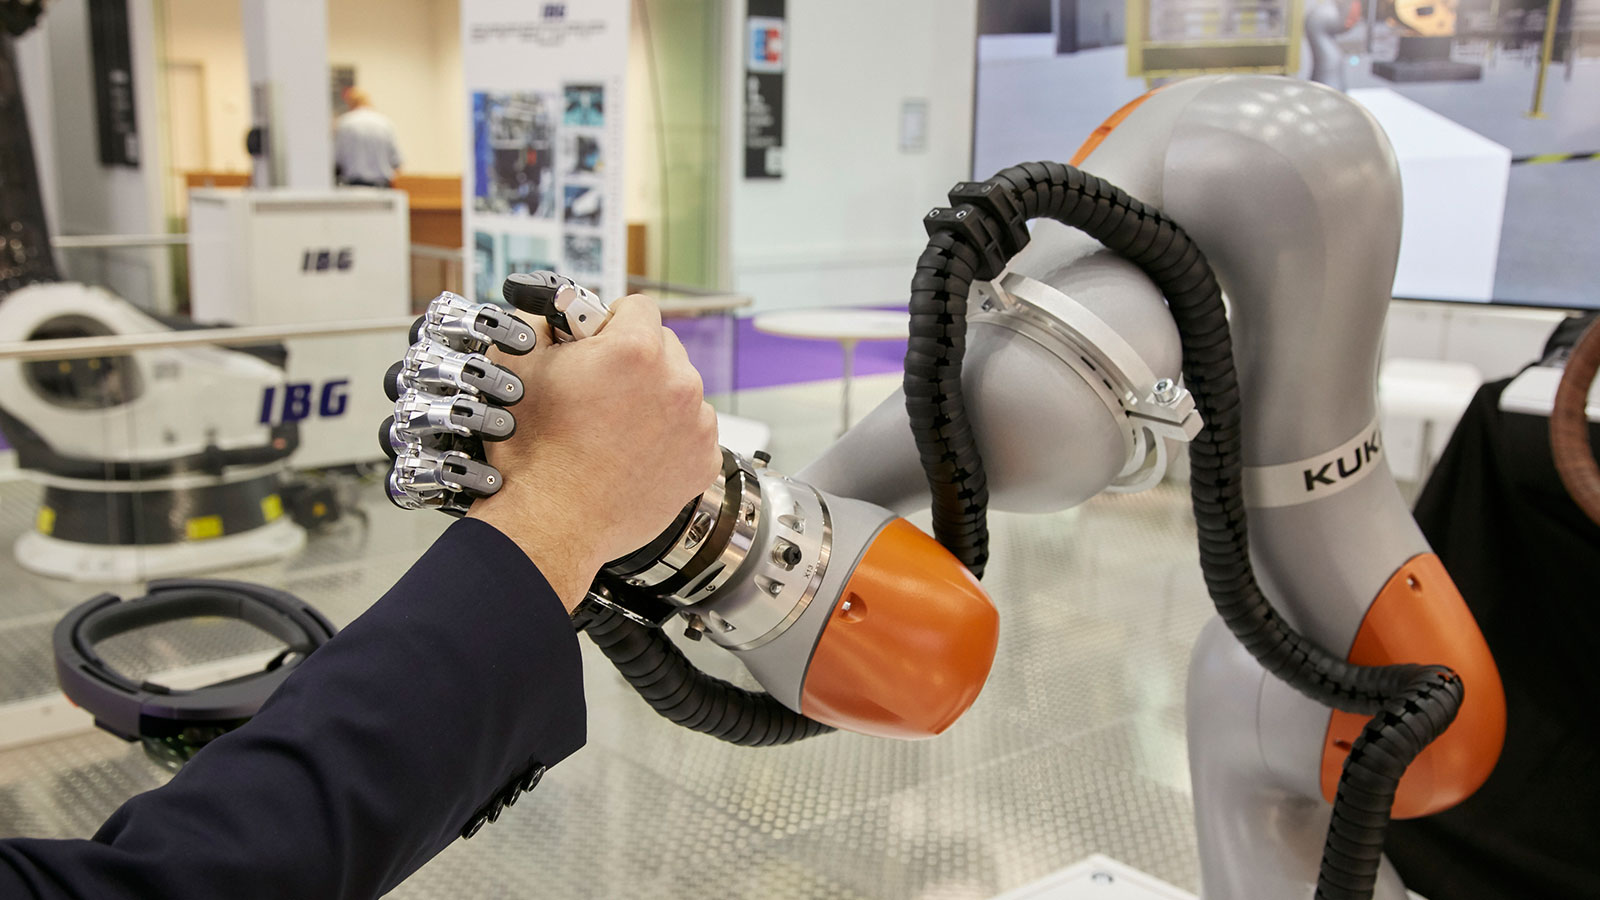 Armdrücken: Ein Roboter-Arm und ein Mensch auf der NORTEC